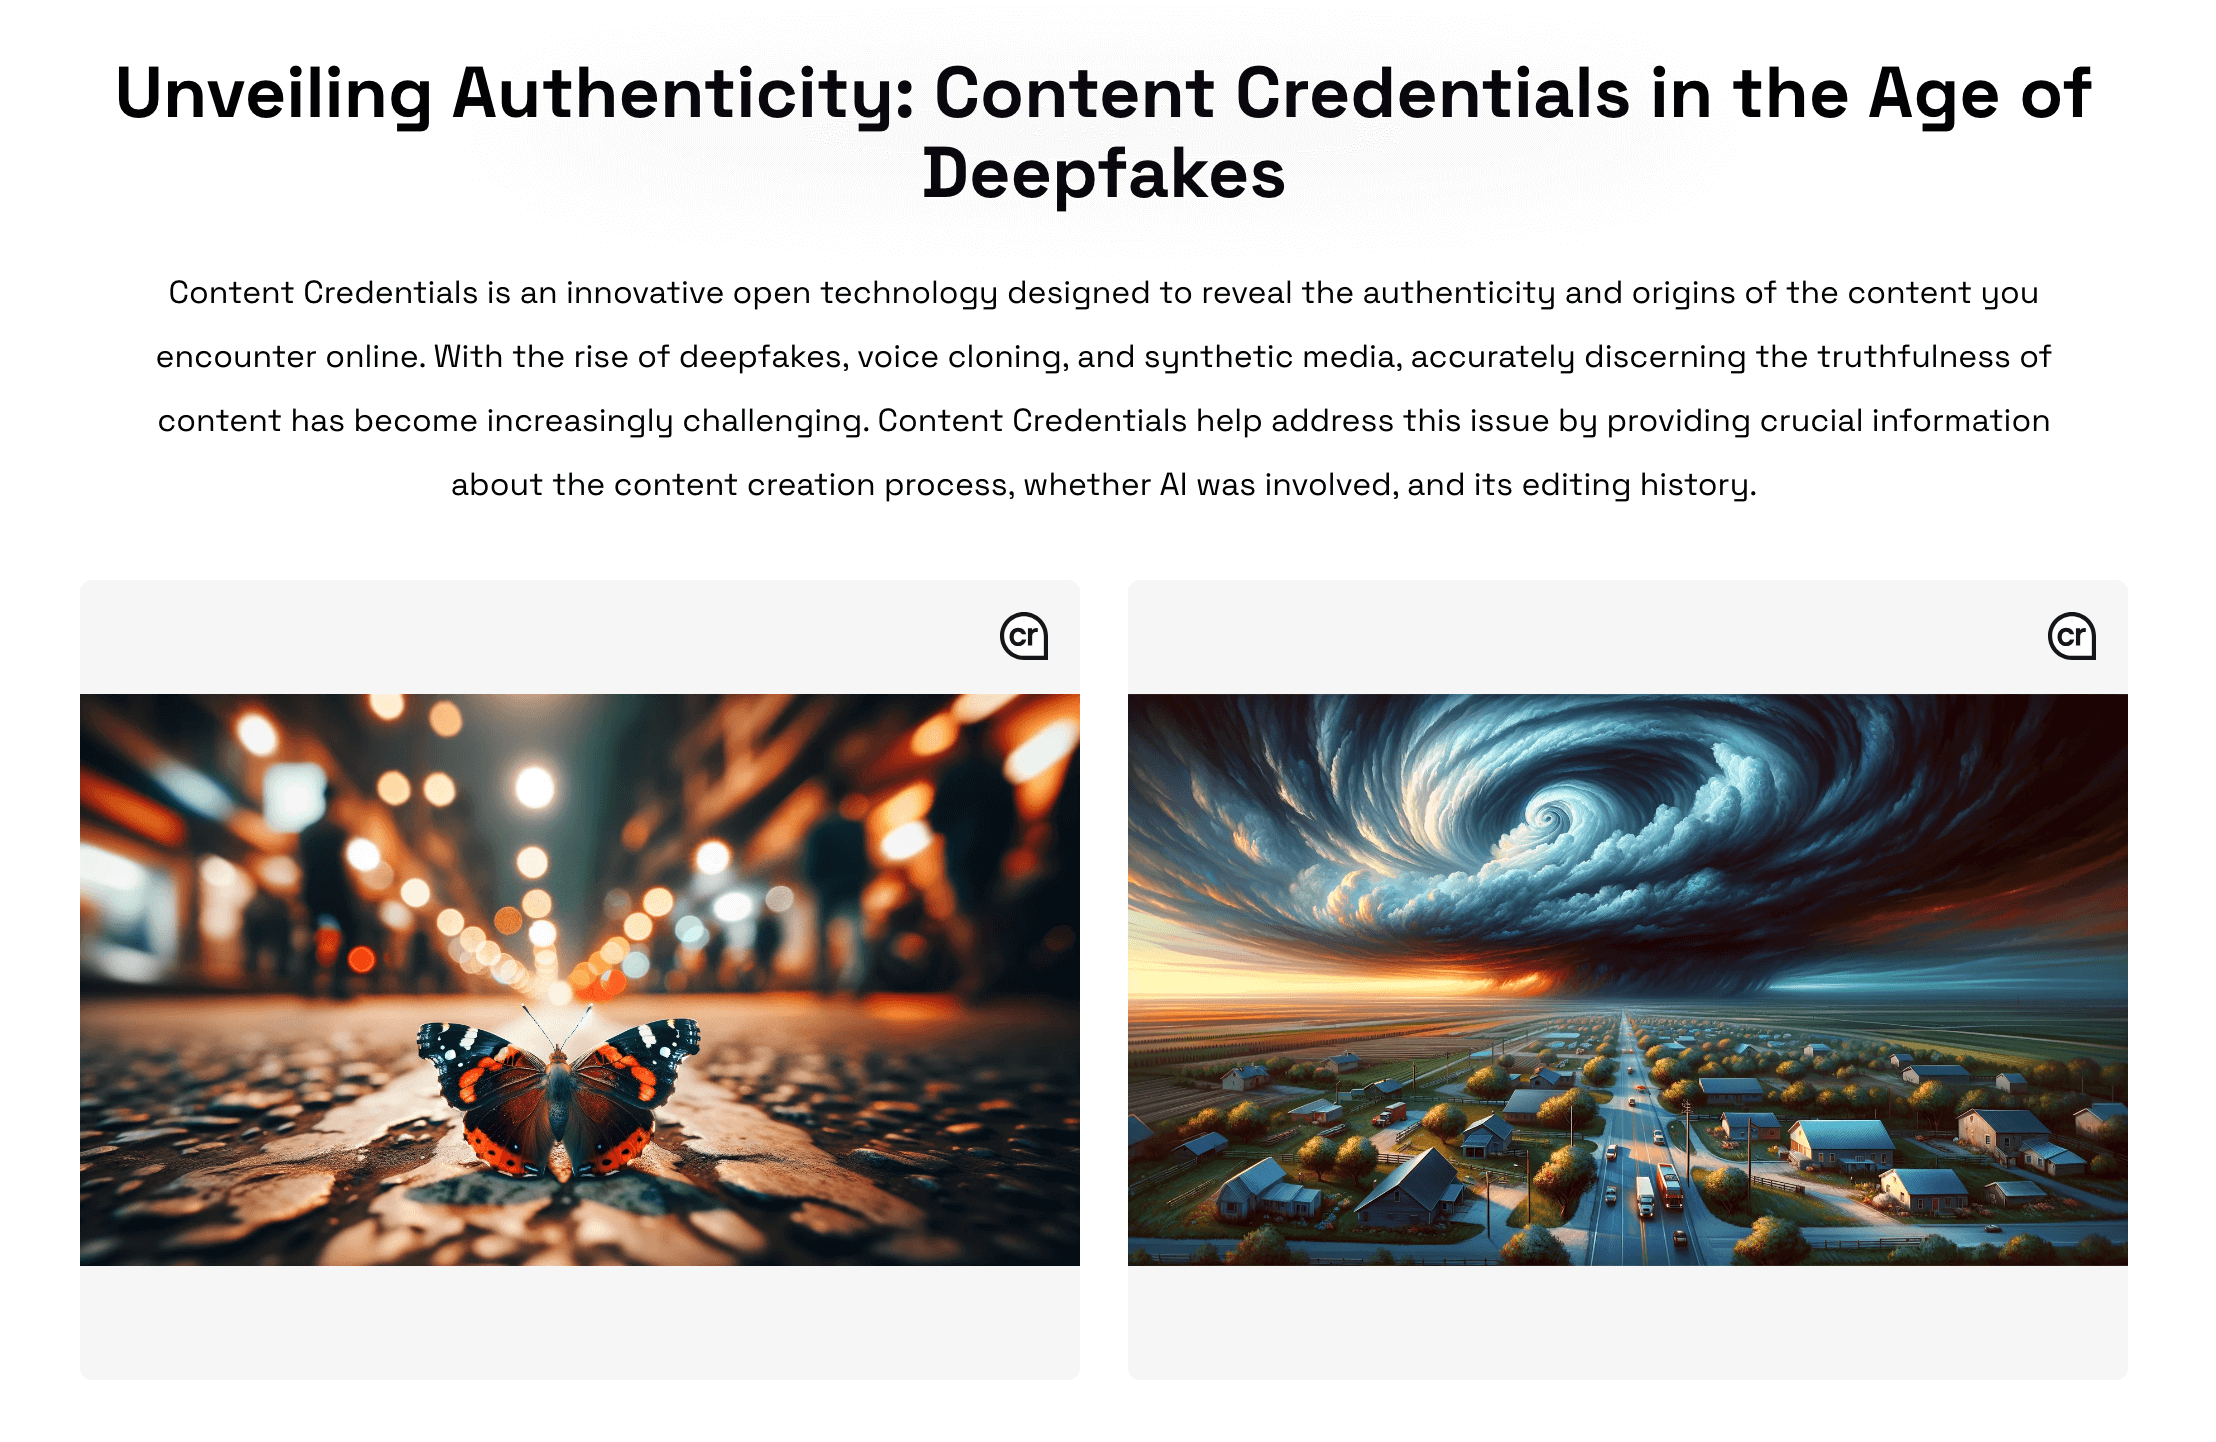 ContentCredentials.io 